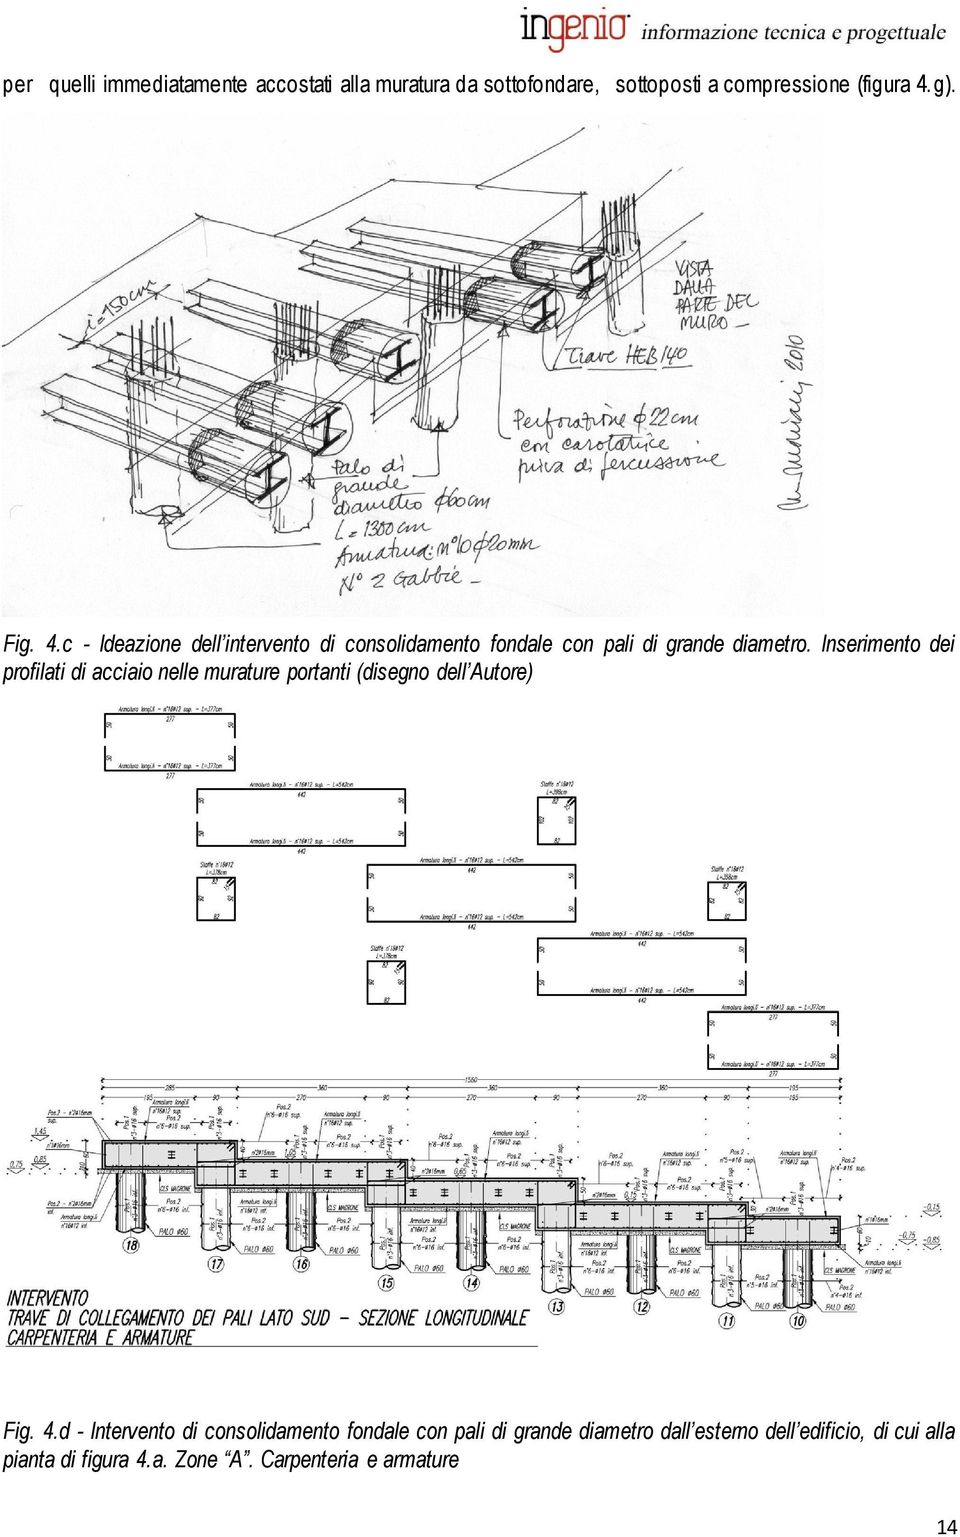 Inserimento dei profilati di acciaio nelle murature portanti (disegno dell Autore) Fig. 4.